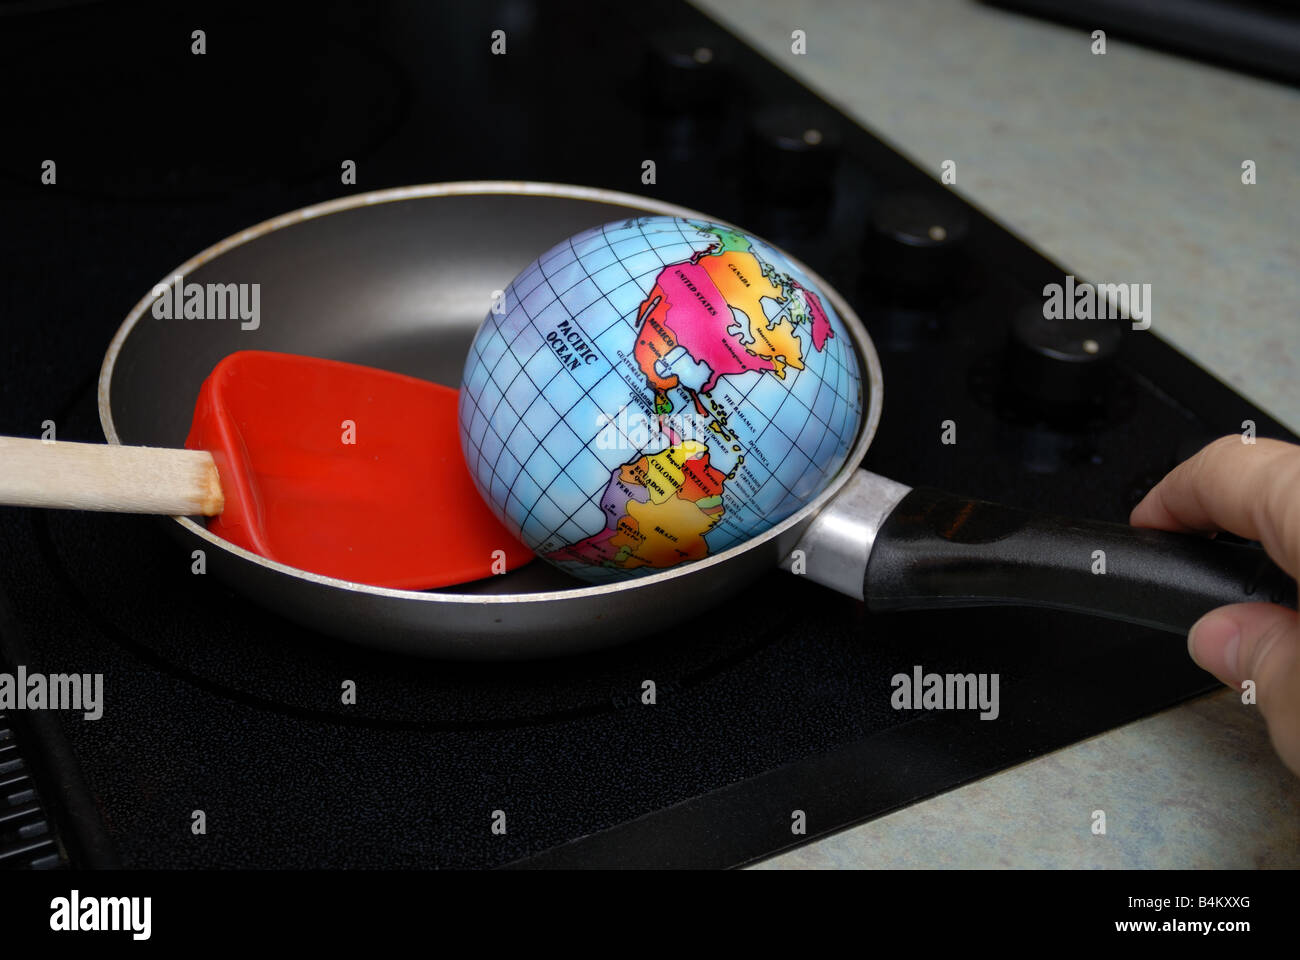 Eine Kugel wird angezeigt, gebraten in einer Pfanne auf eine Herdplatte, stellvertretend für das Konzept der globalen Erwärmung Stockfoto